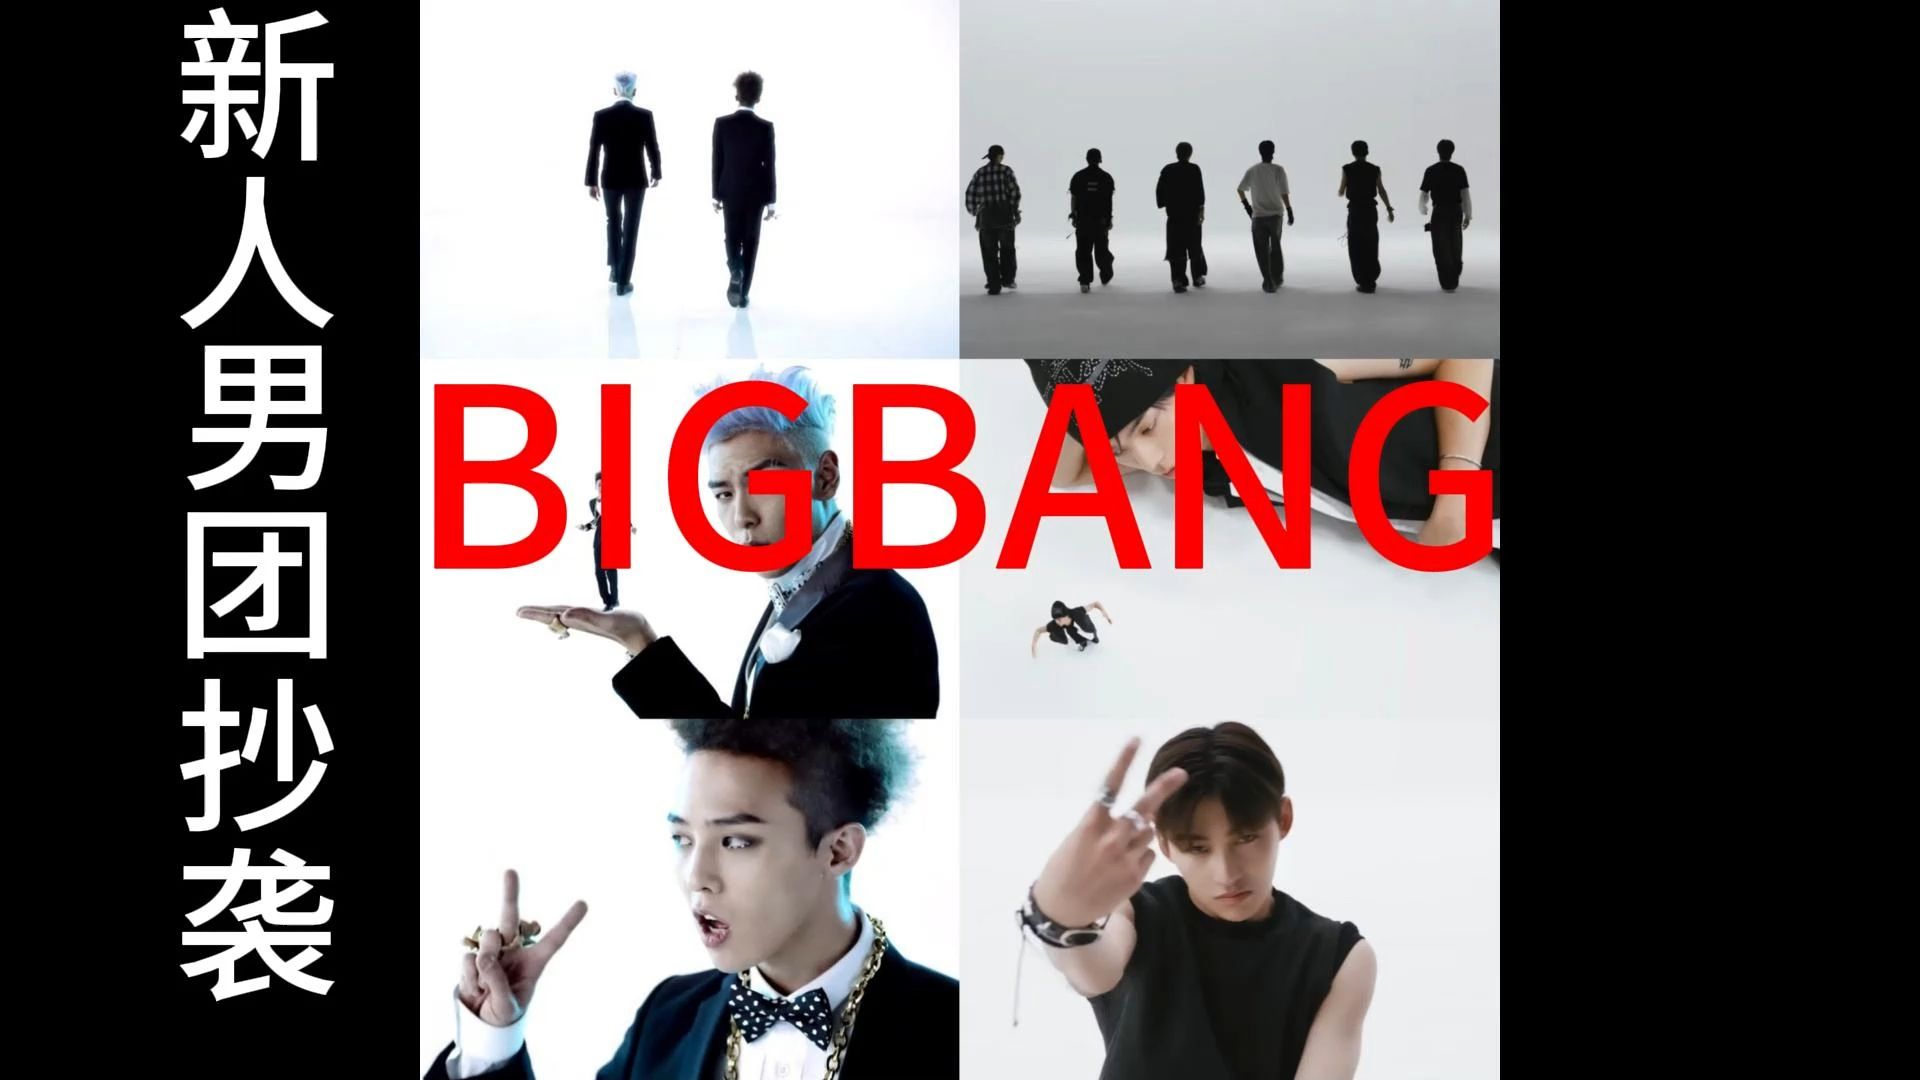 【hybe】推出的新人男团tws抄袭【bigbang】成员gd&top的歌曲在韩国